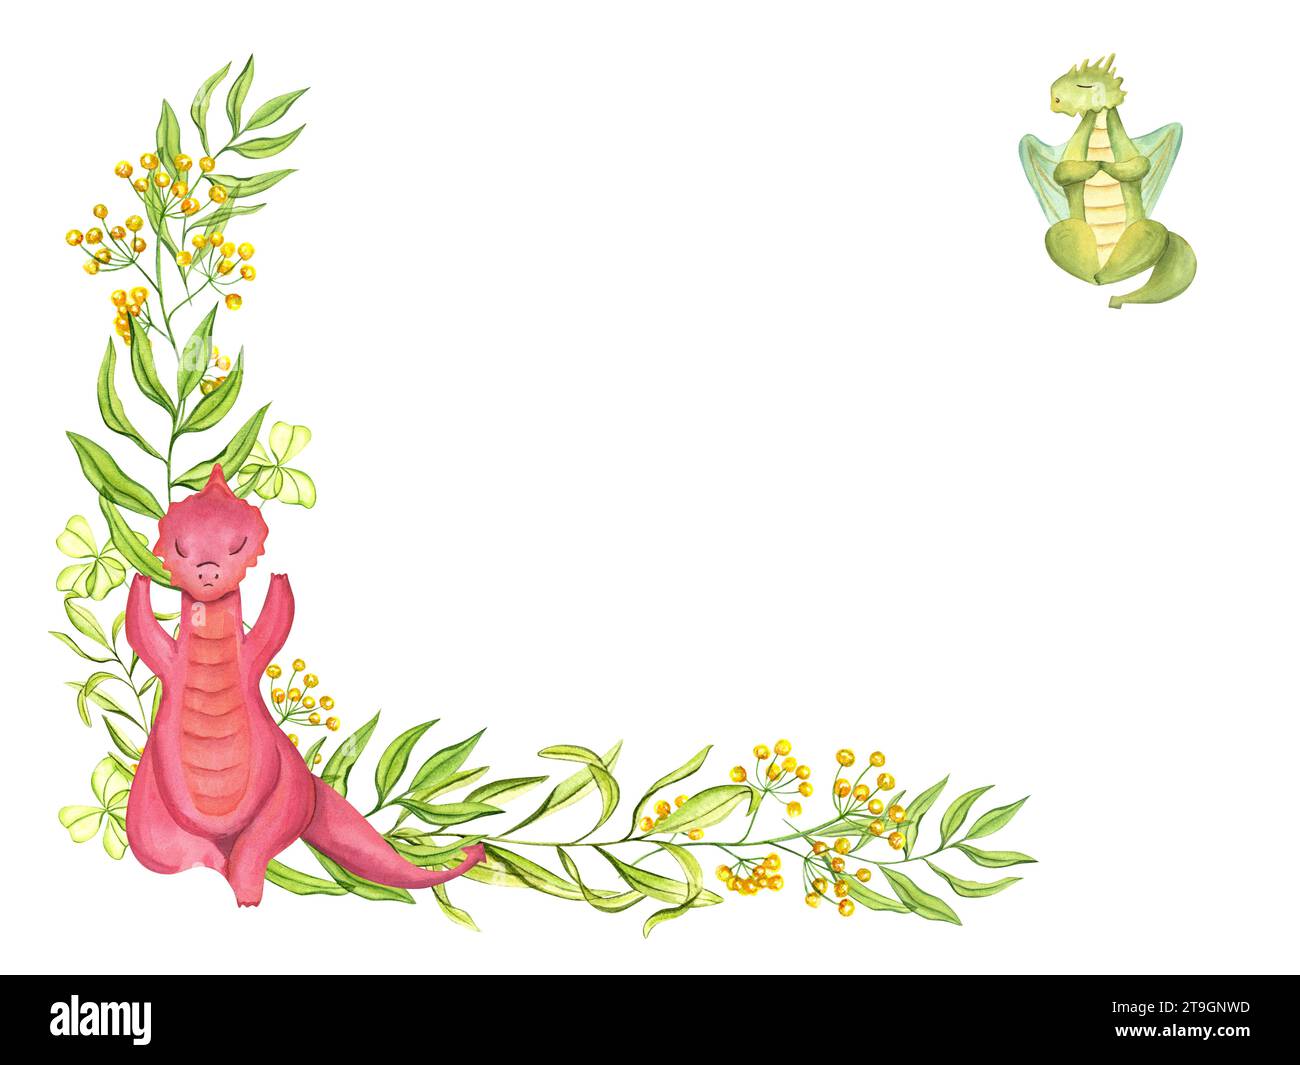 Rahmen mit stilvollen roten, grünen Drachen in verschiedenen Yoga-Posen. Tiermeditation. Blühende gelbe Blumen, junge Pflanzen. Stockfoto